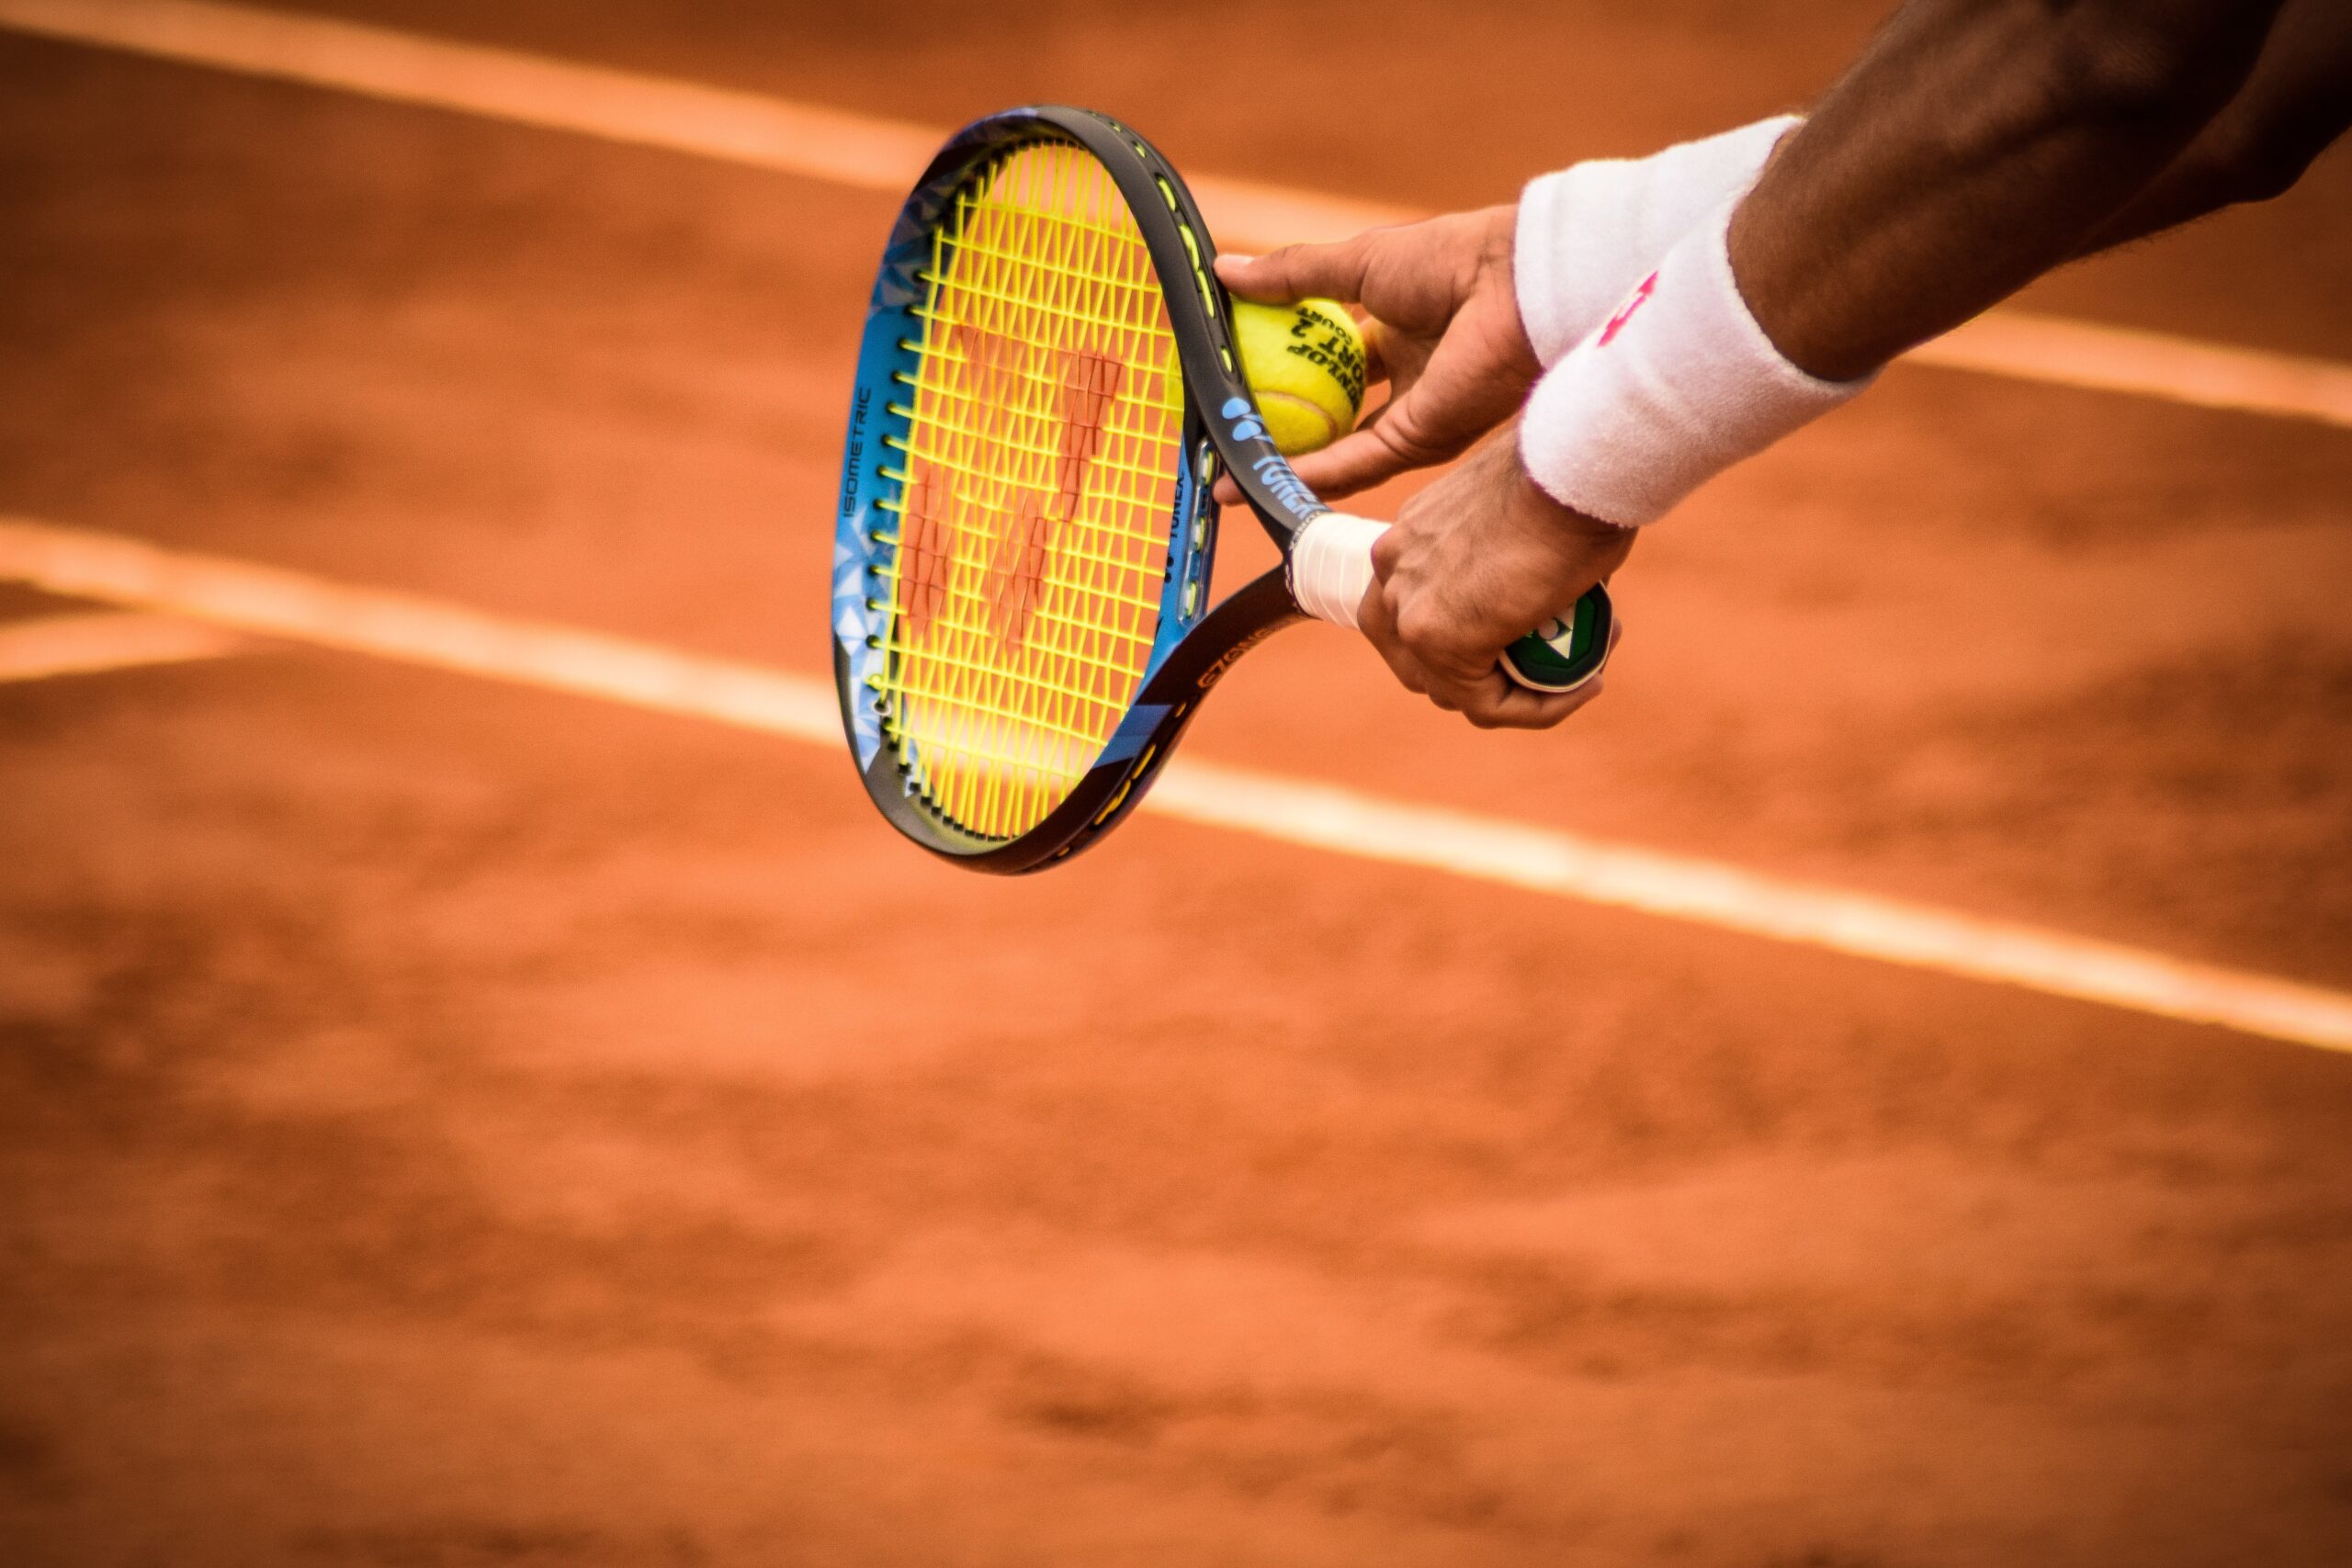 Tennisser houd tennisracket horizontaal met tennisbal ertegen aan.